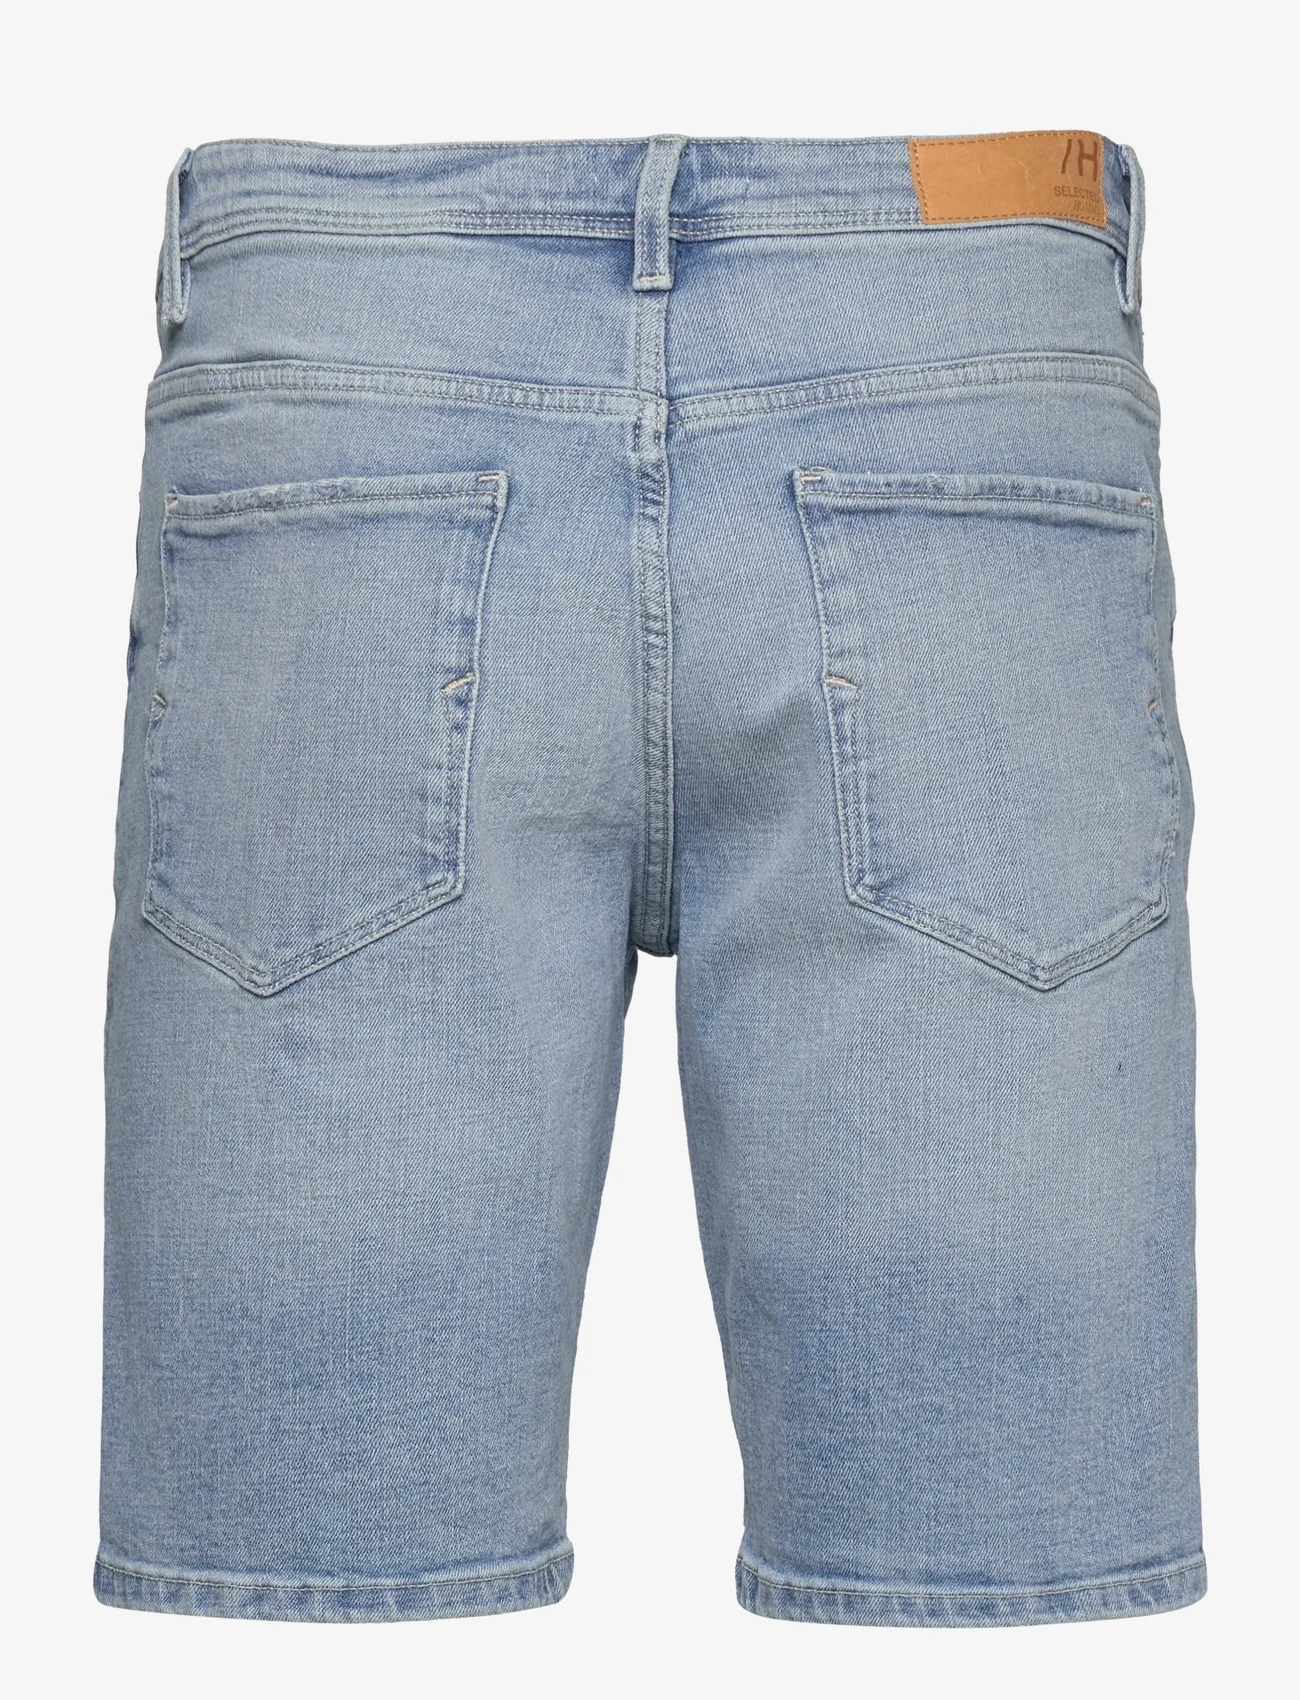 Selected Homme - SLHALEX 27415 L. BLUE DNM SHORT EX - jeans shorts - light blue denim - 1